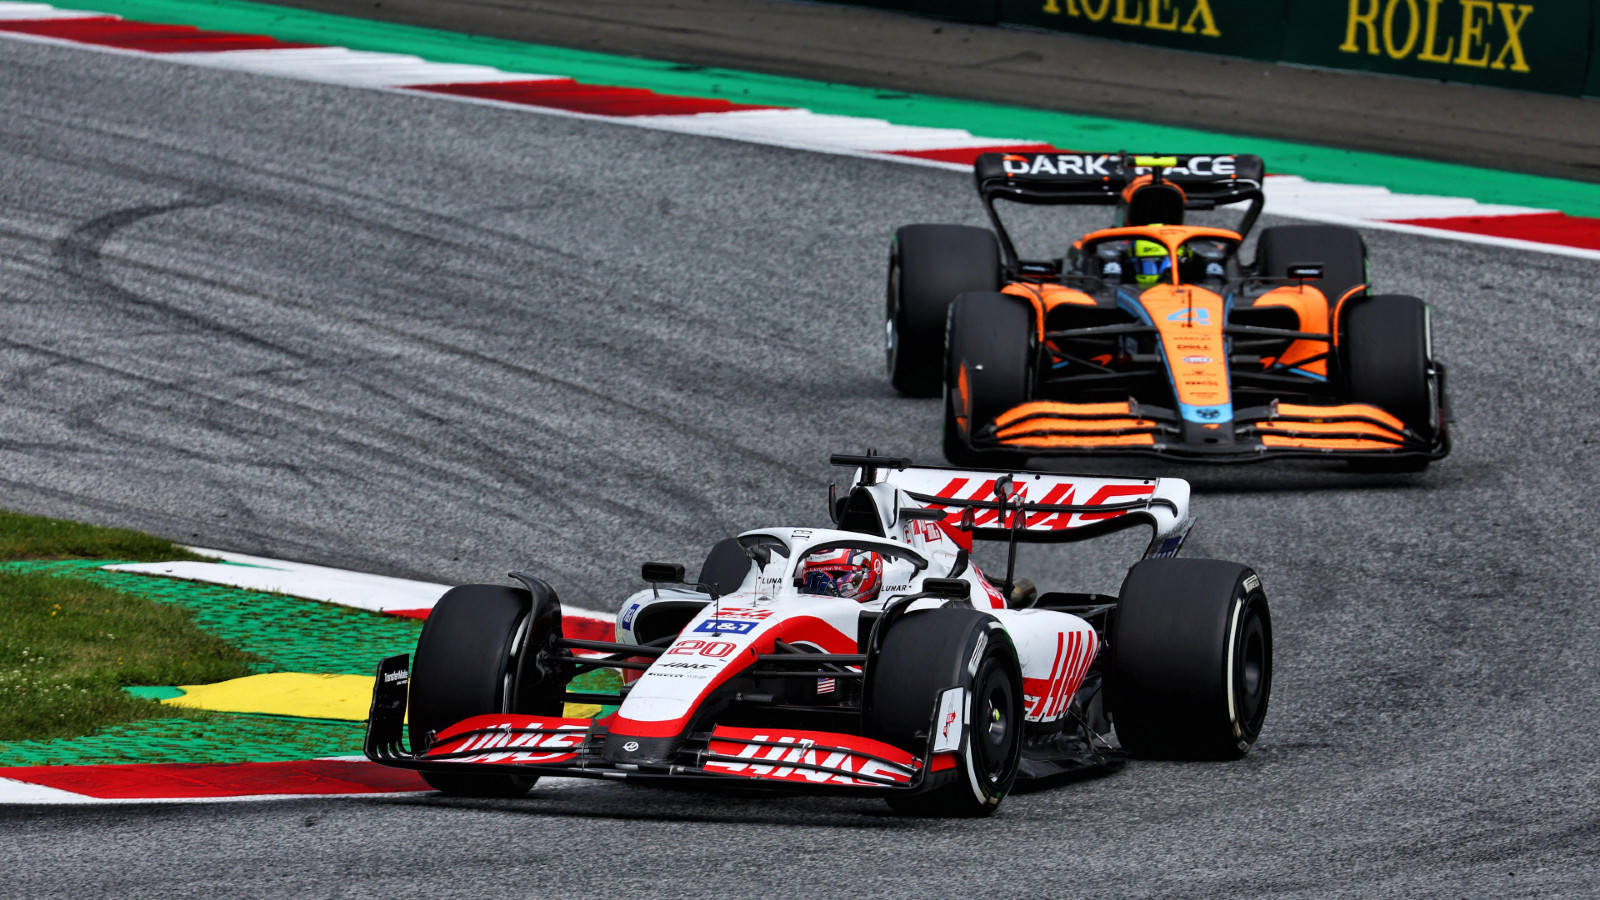 Kevin Magnussen in Intense Race with McLaren Wallpaper